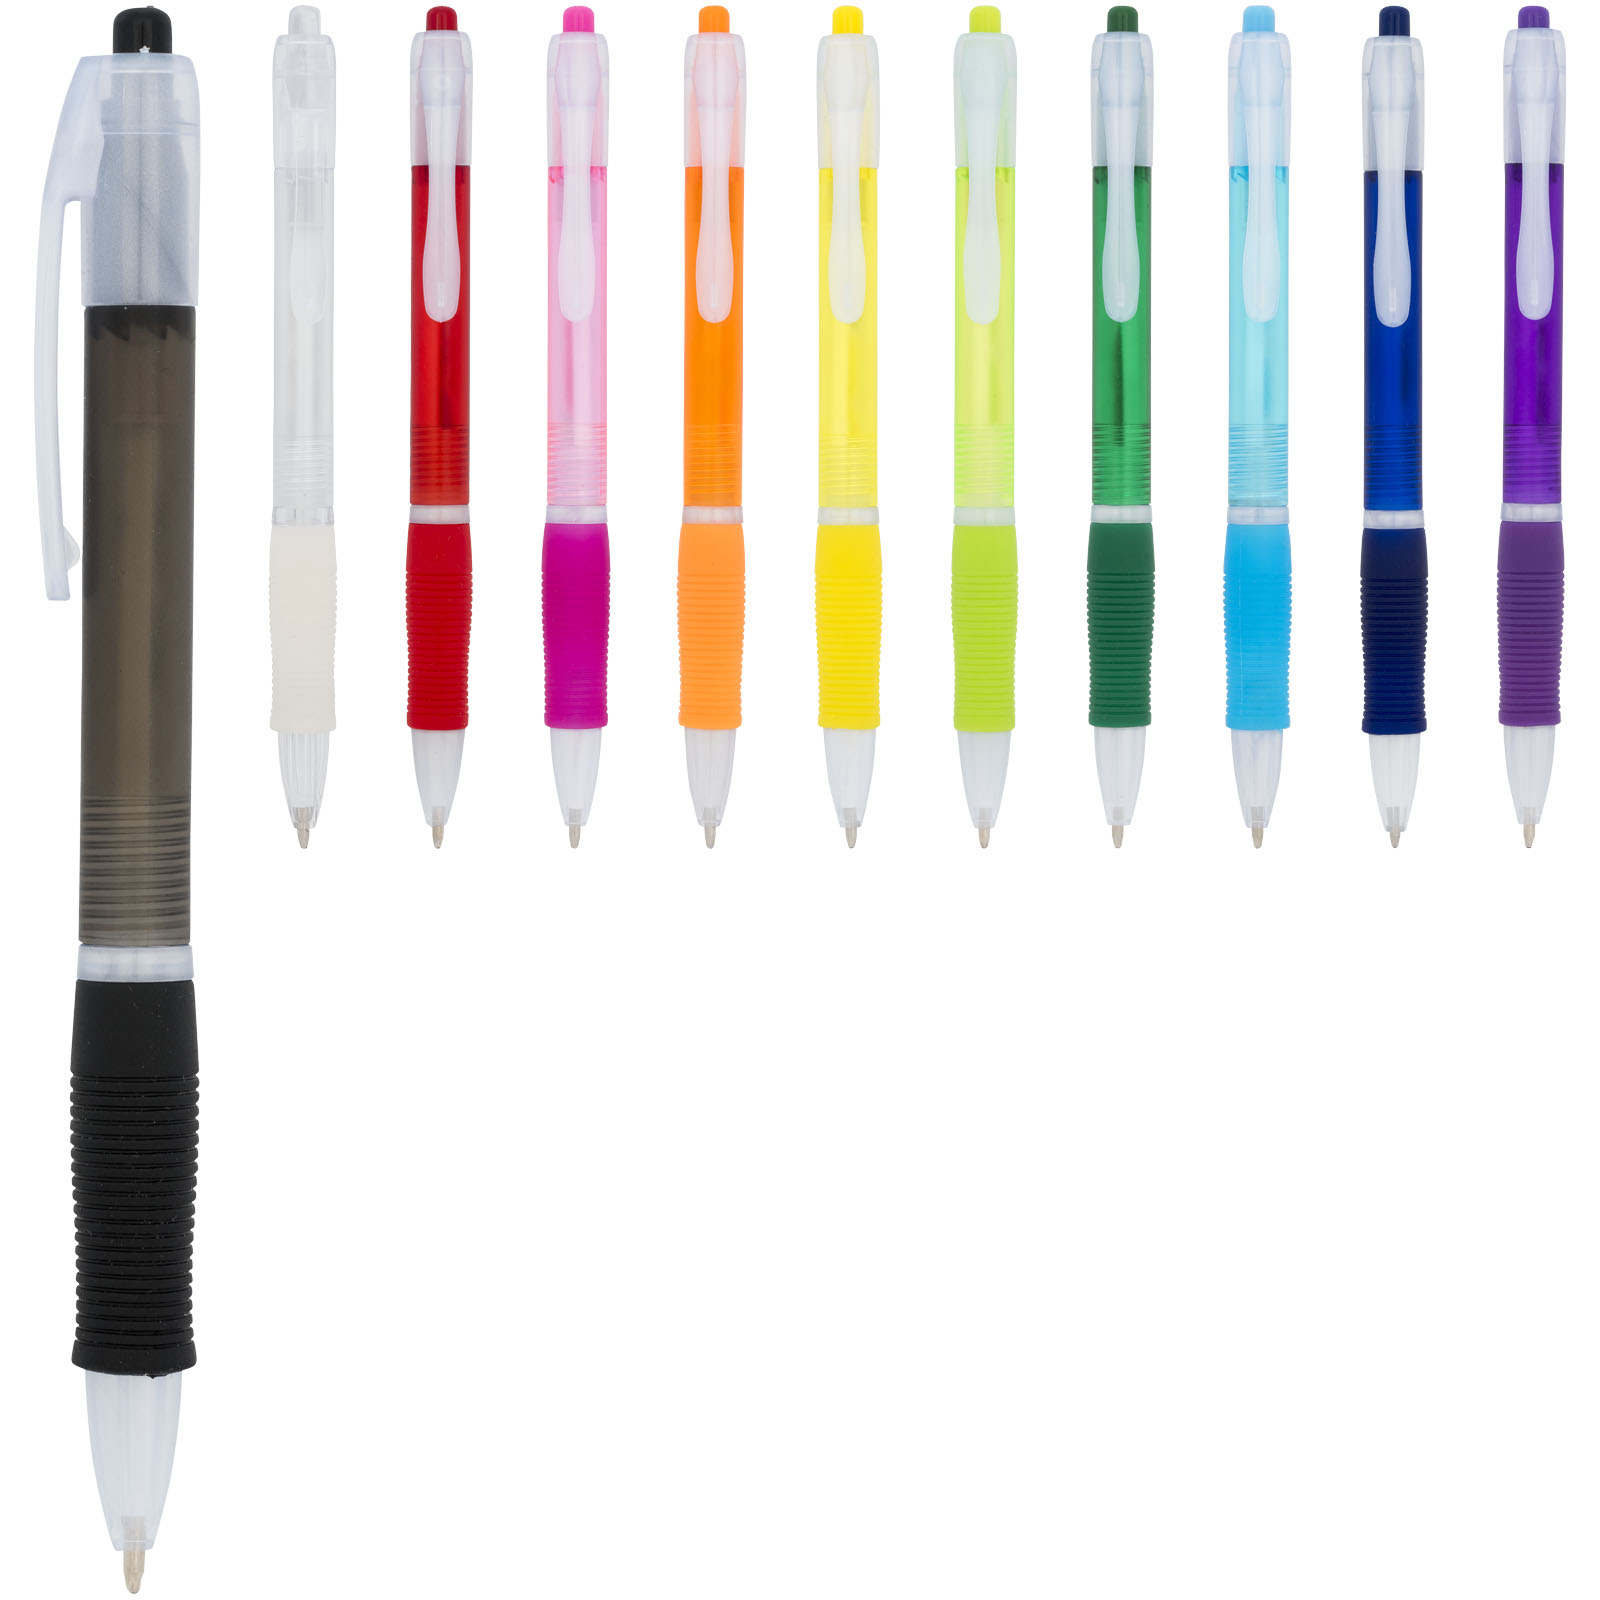 Advertising Ballpoint Pens - Trim ballpoint pen